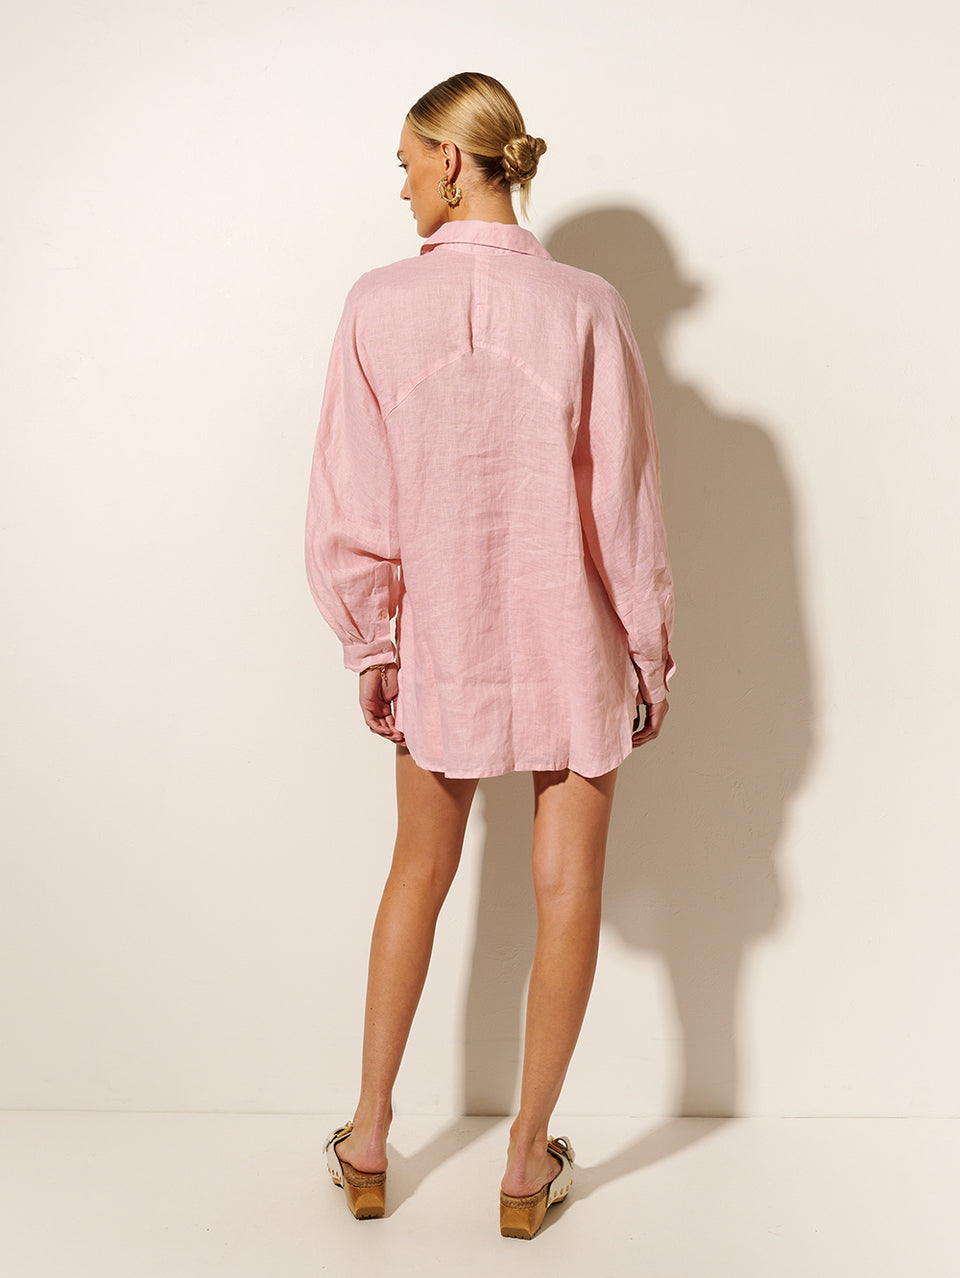 KIVARI Nikita Short | Model wears Pink Linen Shorts Back View